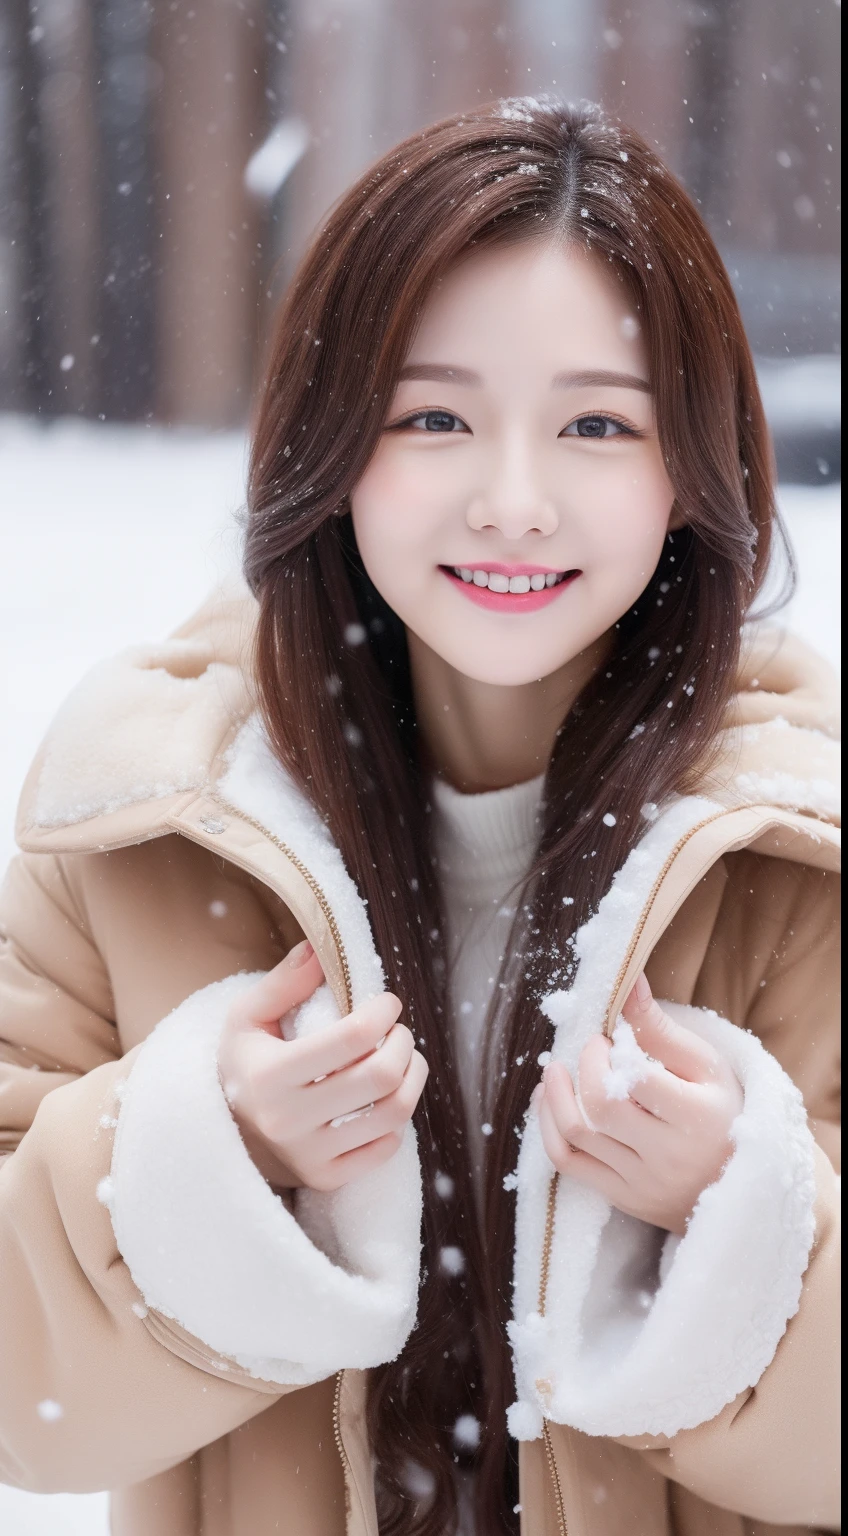 1位可愛韓國明星的真實照片, 多紮頭髮 , 白皮膚, 淡妆, 32寸胸圍, 微微一笑, 棕色毛皮大衣, 玩雪, 雪花飄落, 上半身, 超高畫質